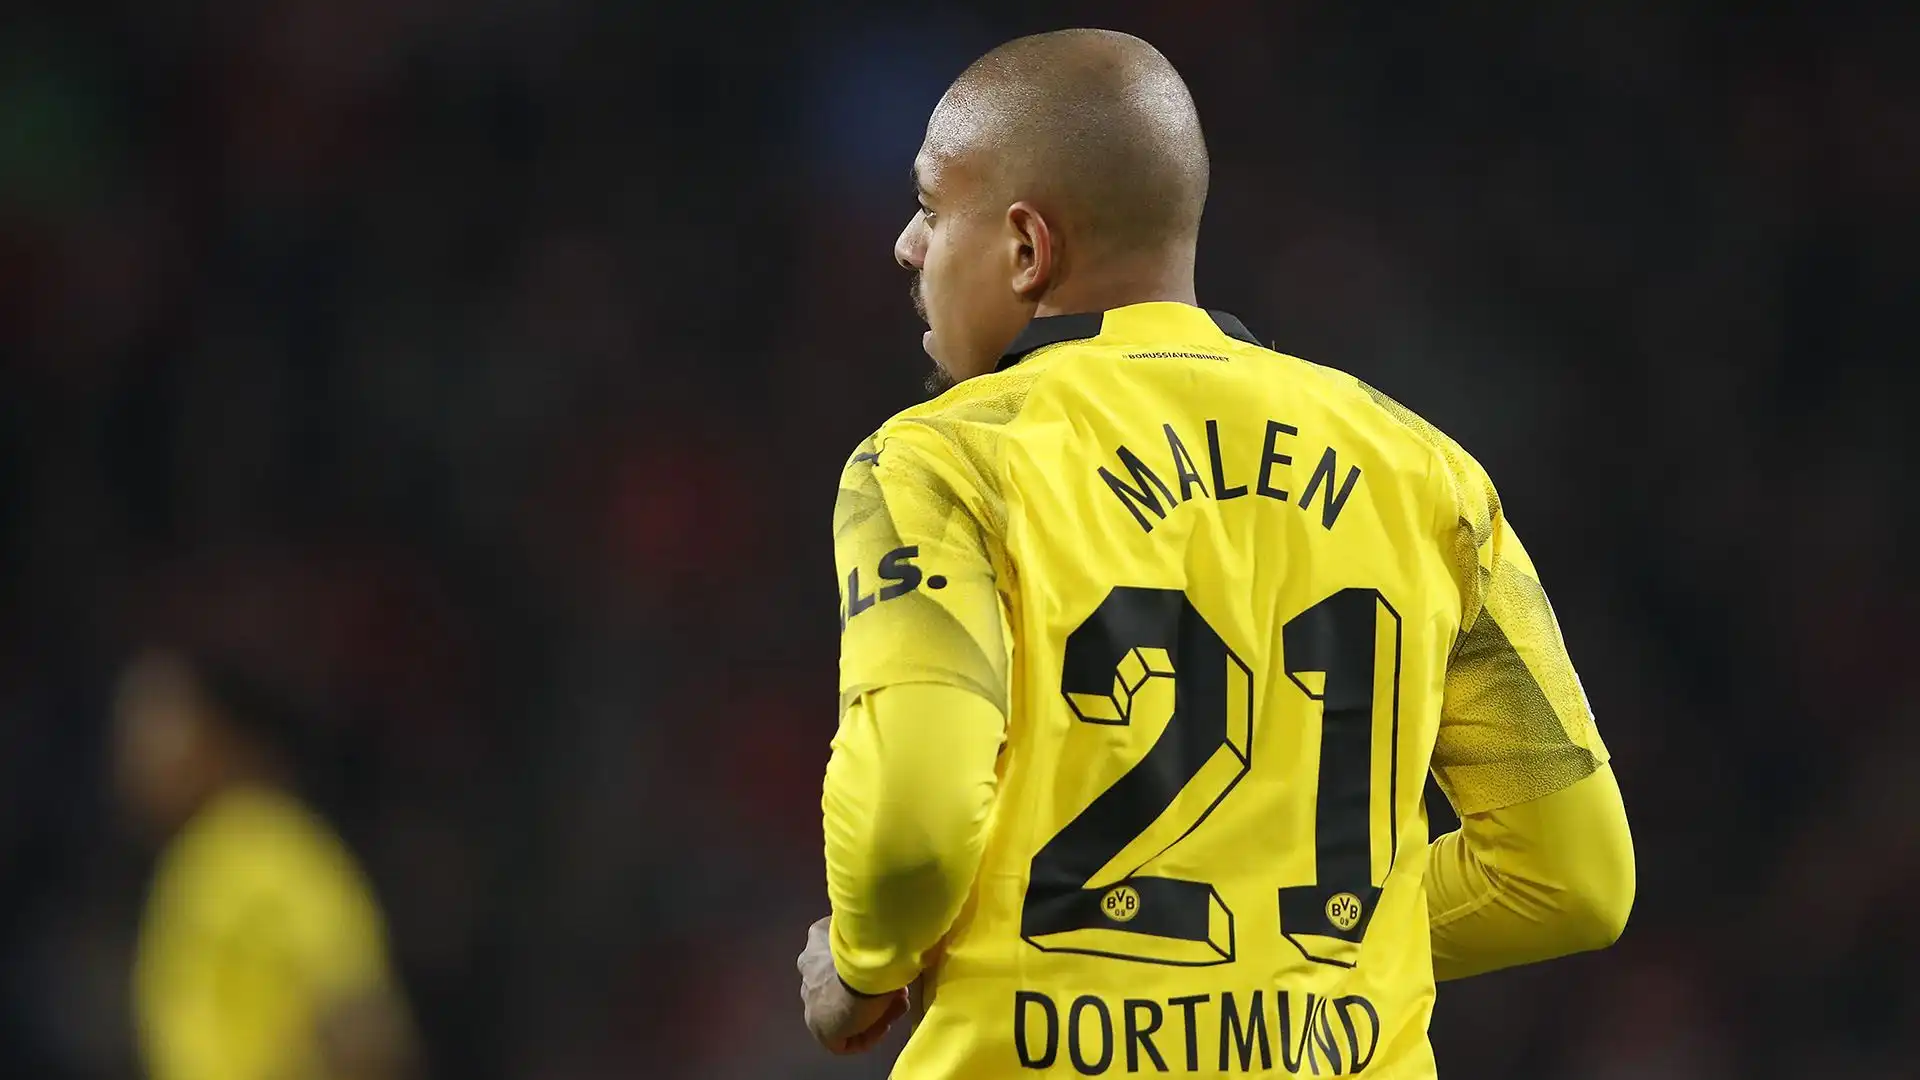 Il calciatore è stato acquistato dal Borussia Dortmund nel 2021 per 30 milioni di euro